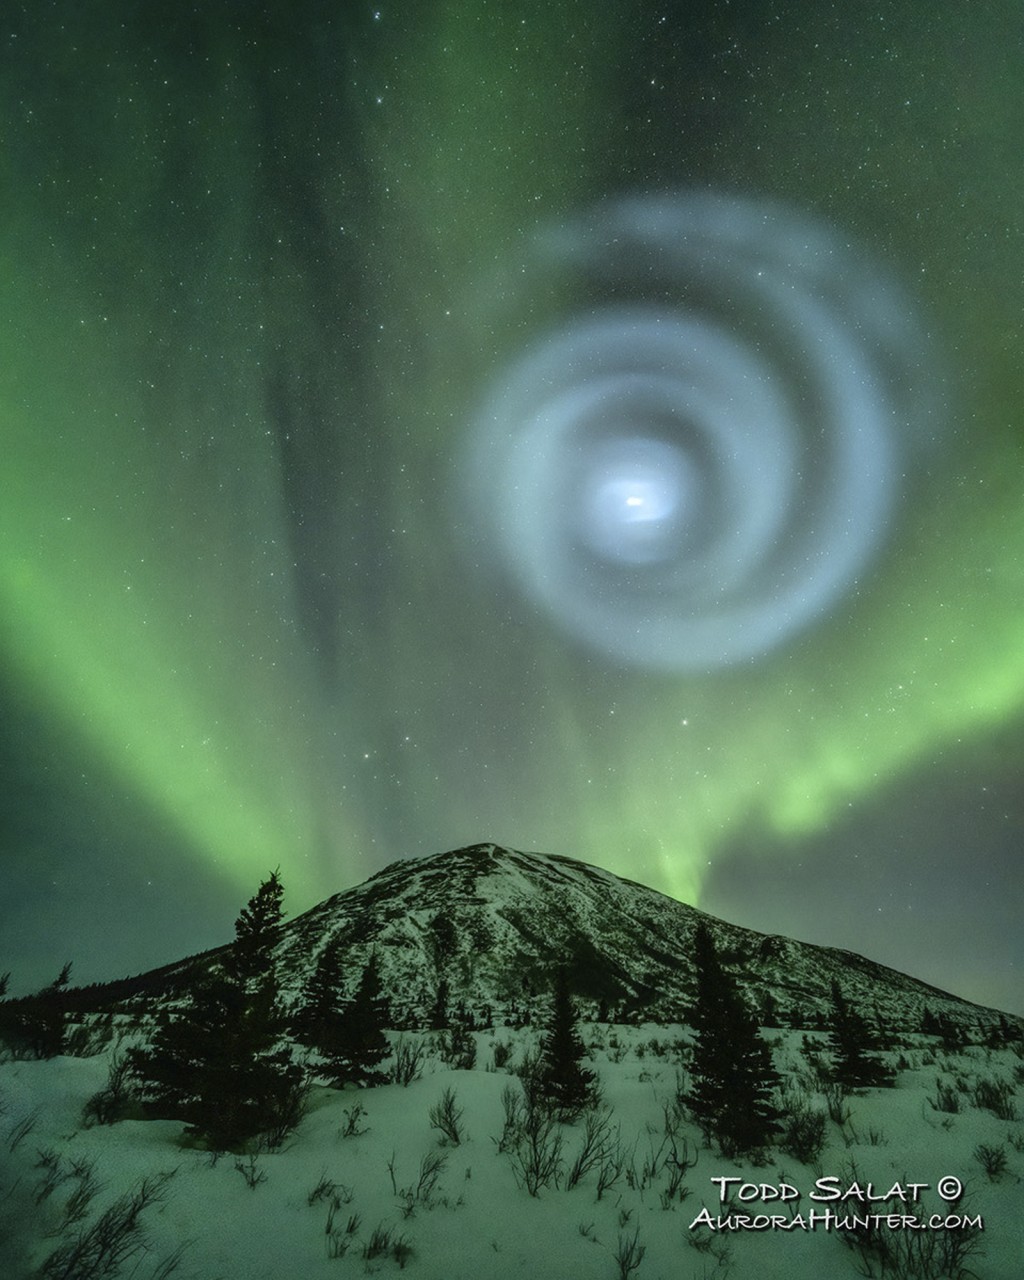 “极光猎人”萨拉特（Todd Salat）拍到极光中出现巨大蓝色螺旋的画面。 美联社